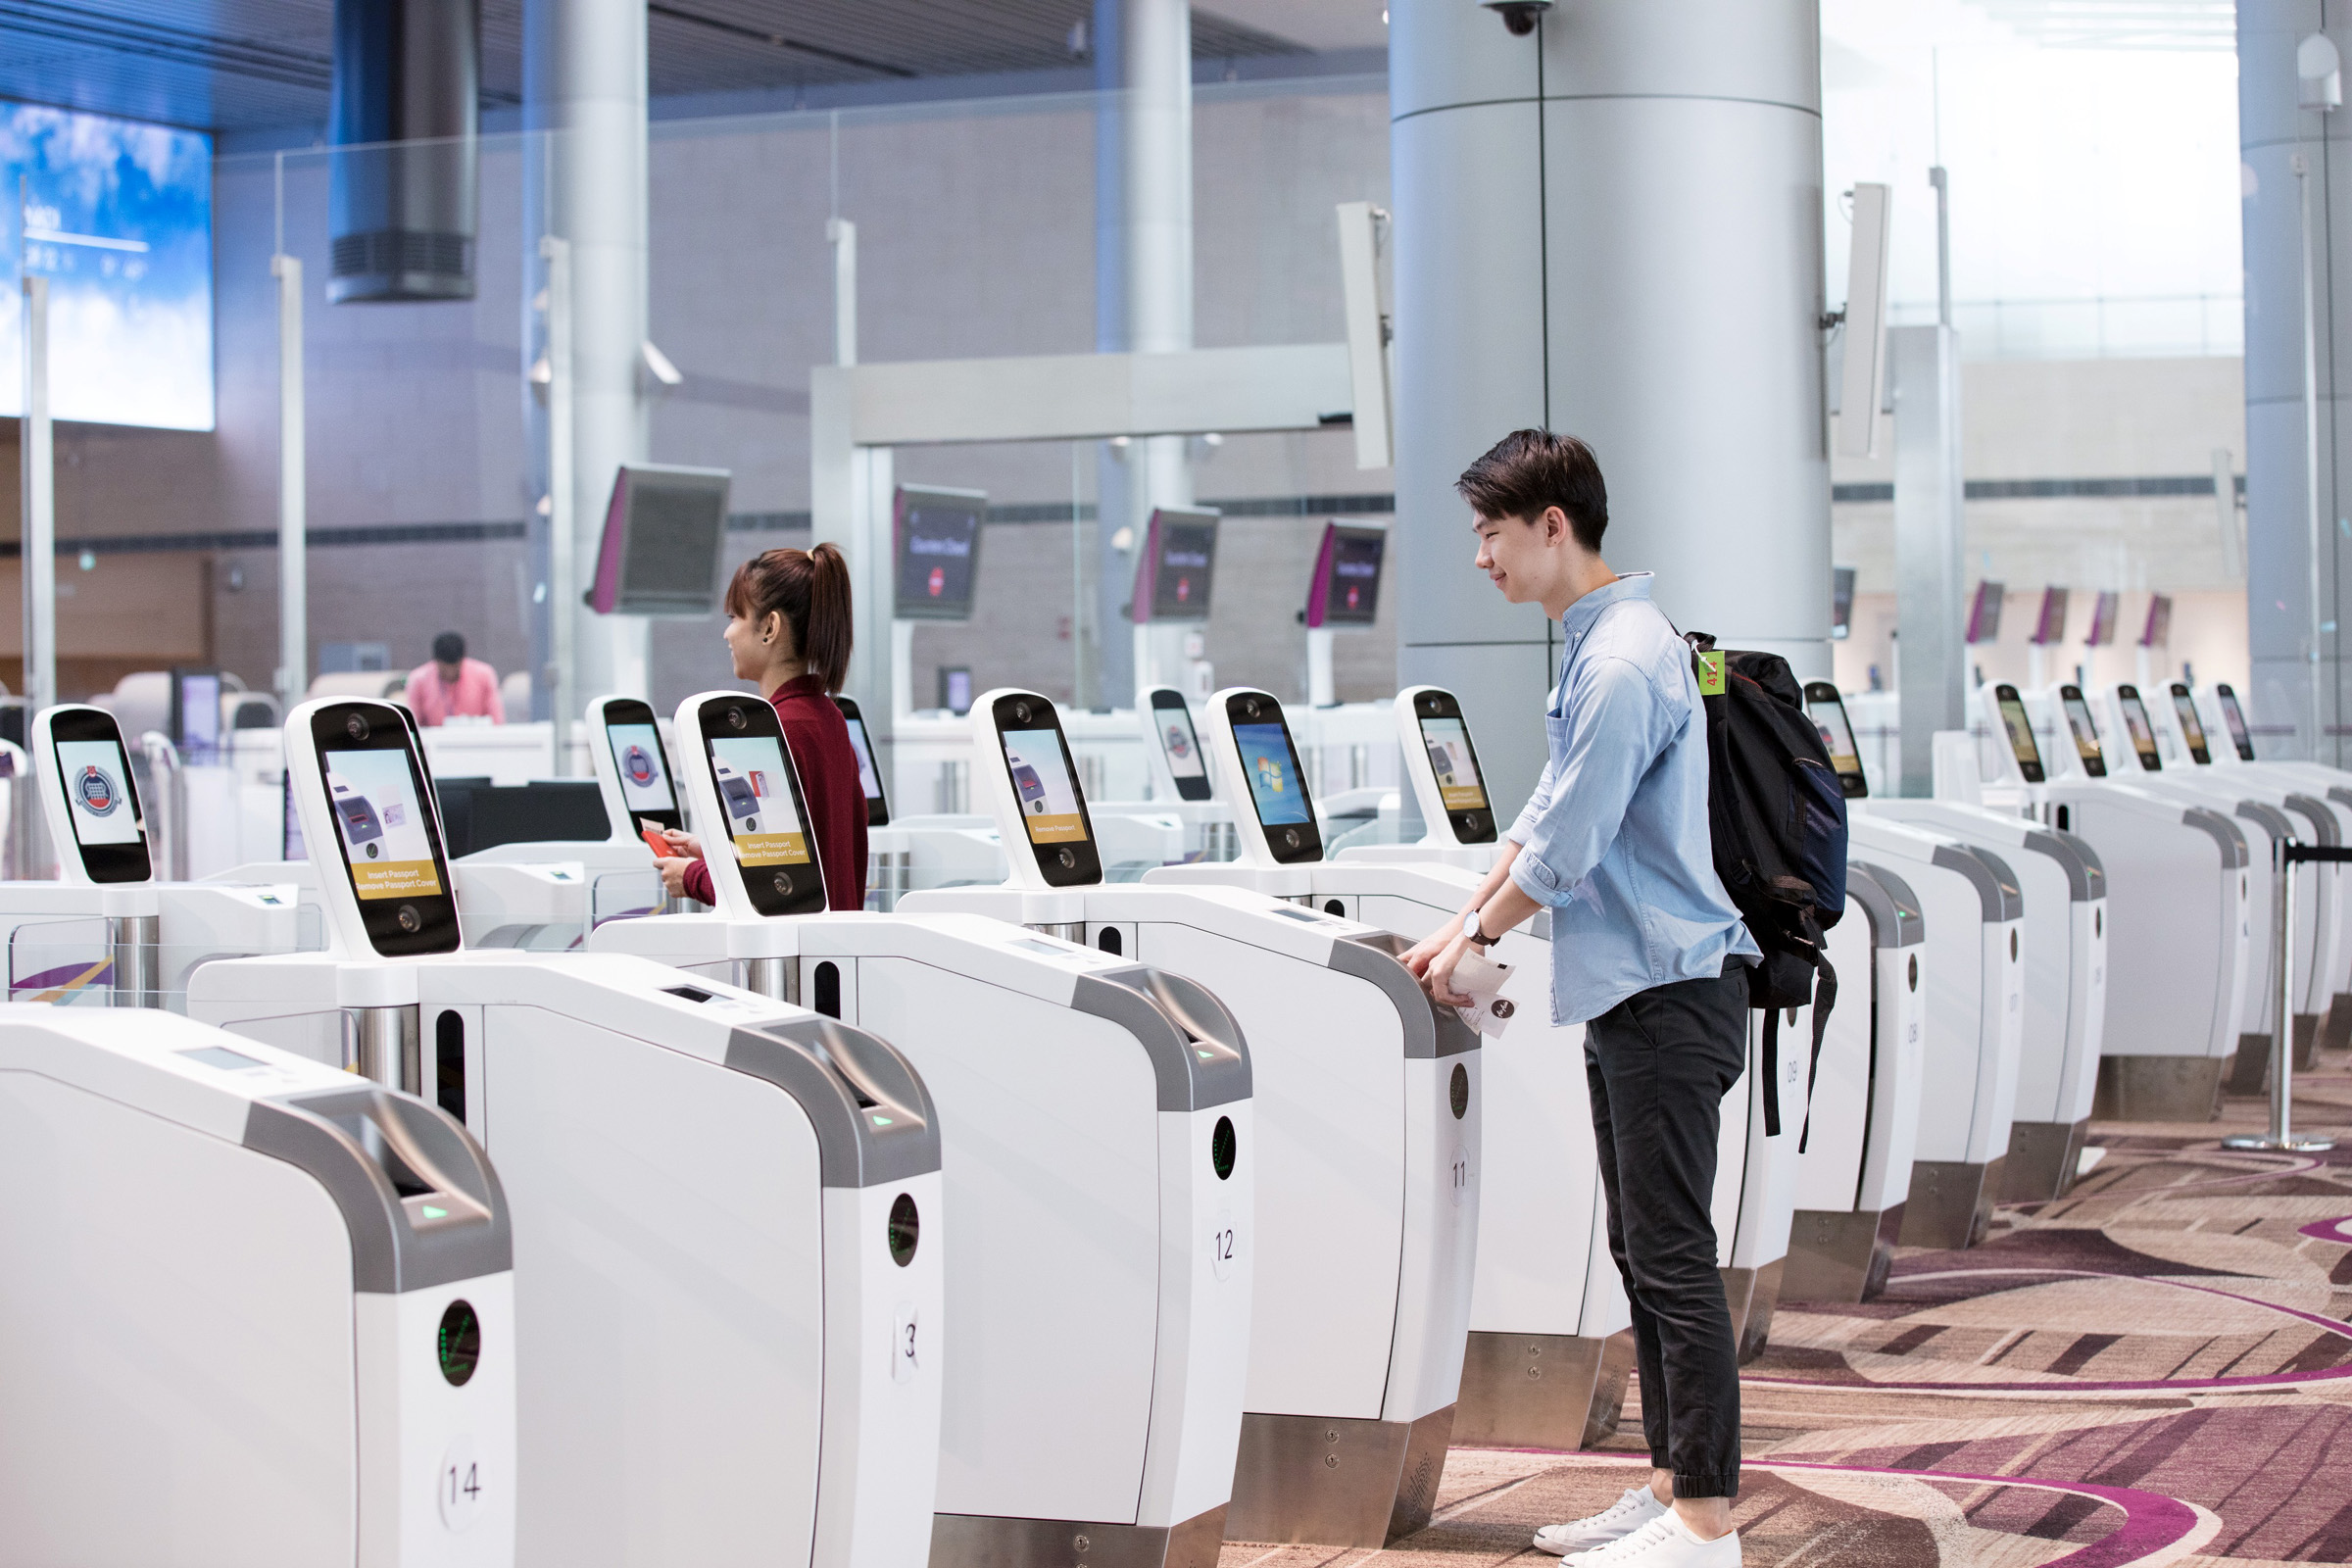 Автоматизация и технологии: Как будет выглядеть аэропорт будущего?